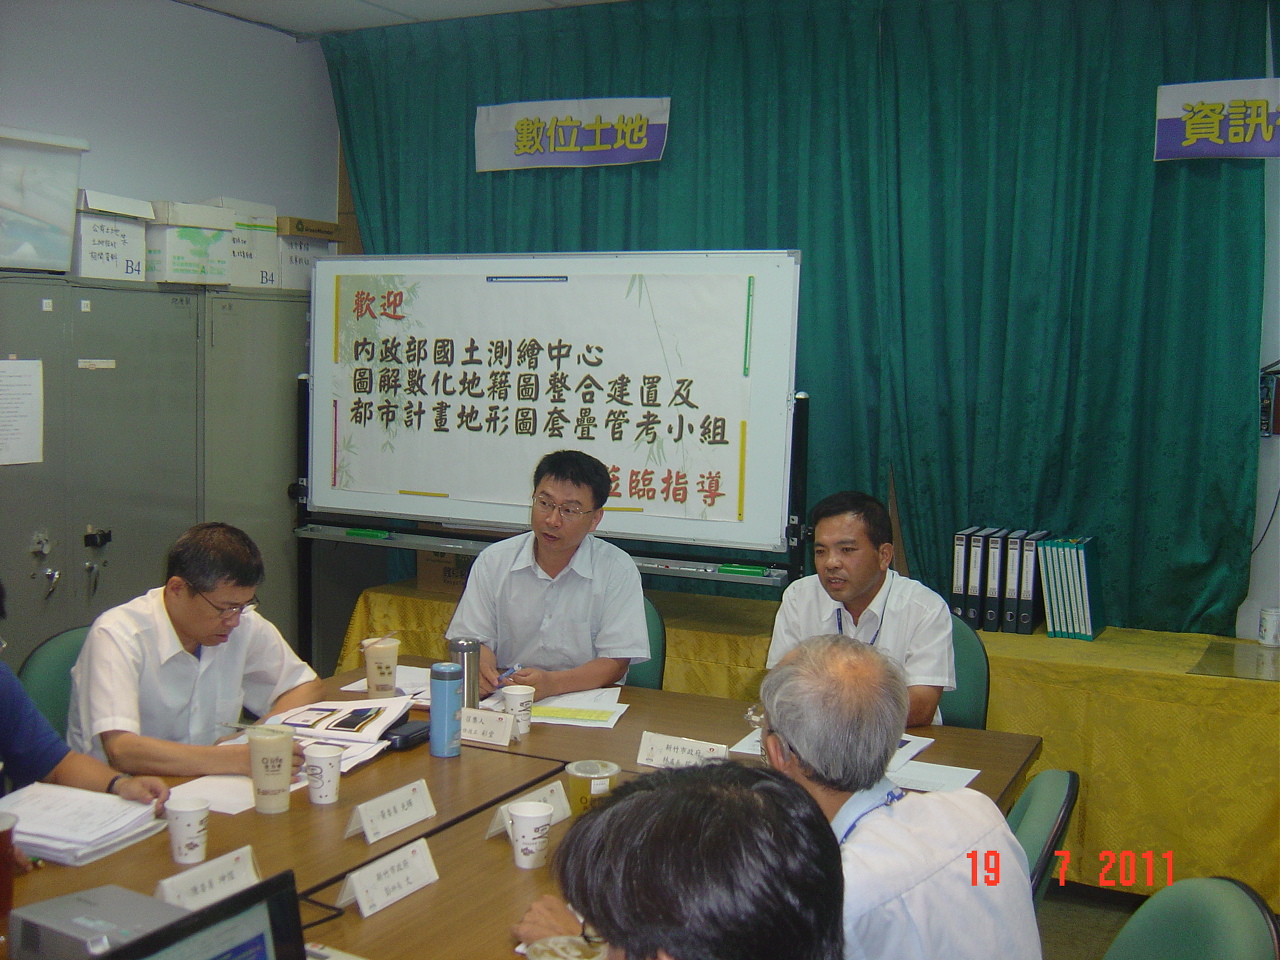 管考小組於新竹市政府管考情形.jpg